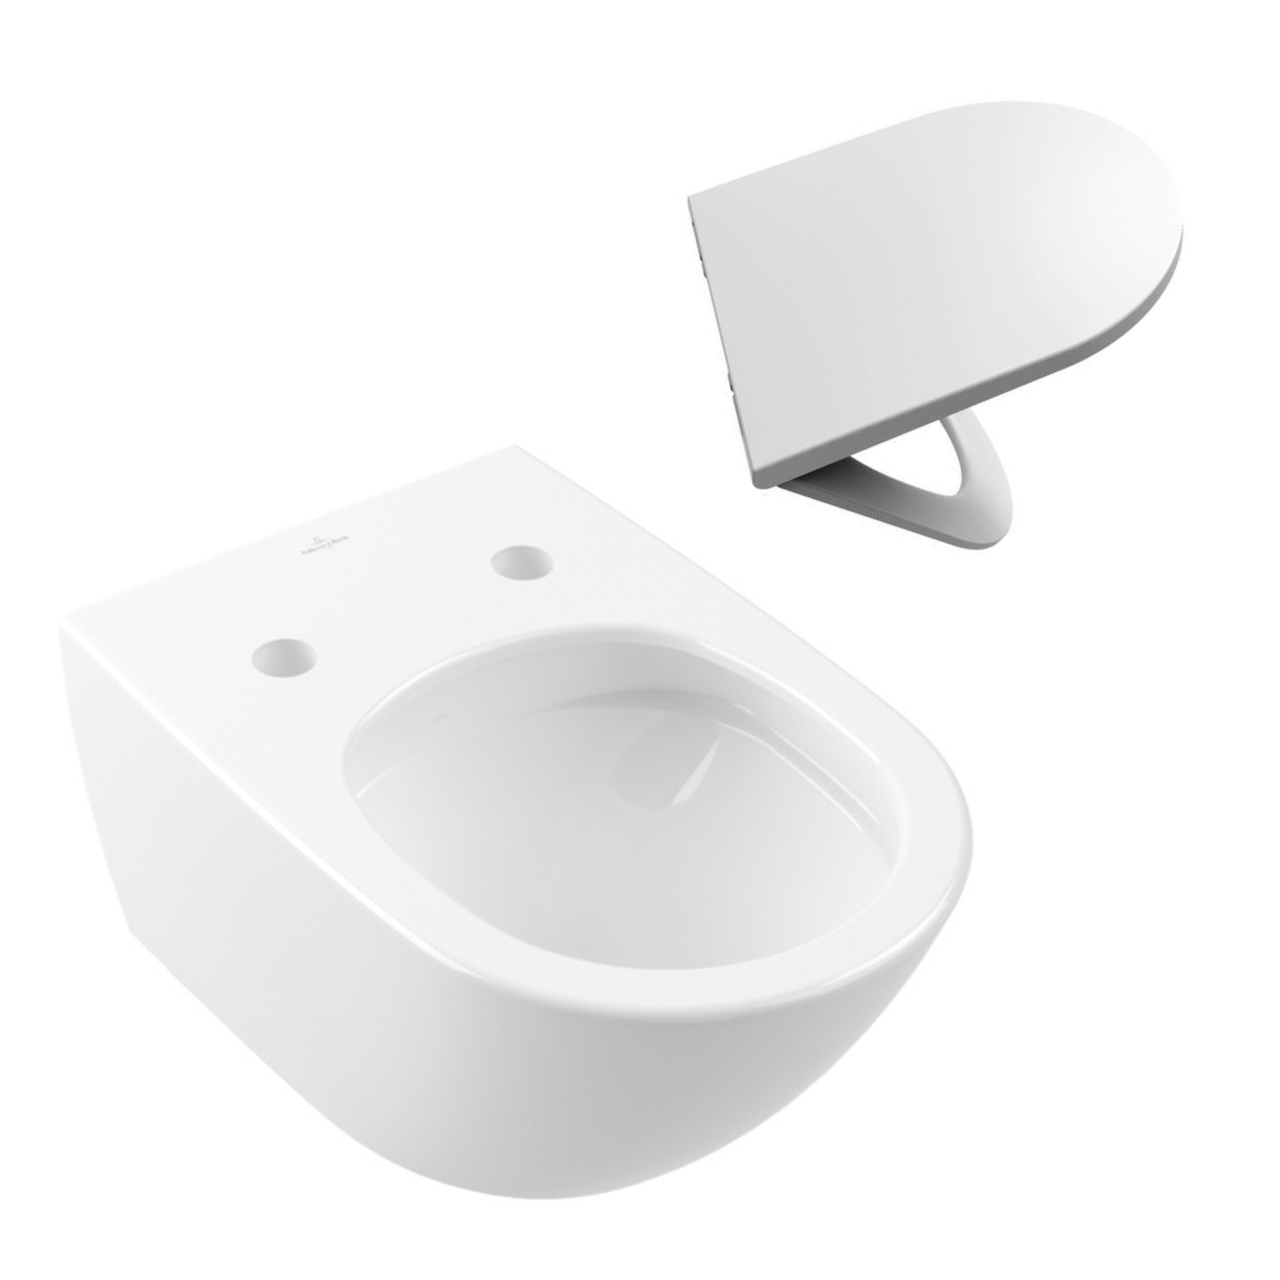 Set aus Wand-Tiefspül-WC „Subway 3.0“ mit CeramicPlus-Beschichtung inklusive WC-Sitz mit Absenkautomatik